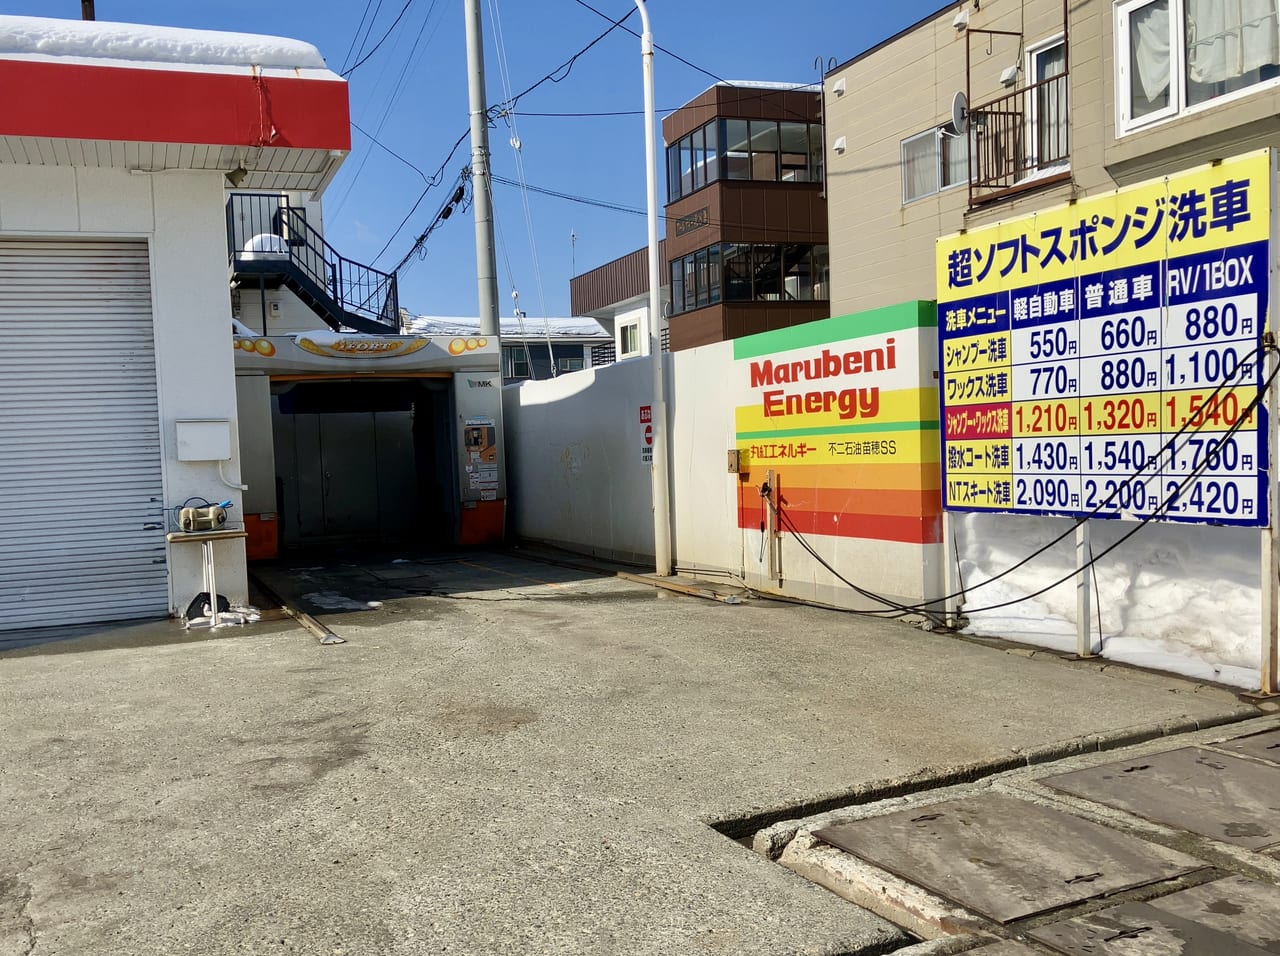 丸紅エネルギー苗穂サービスステーションが3月31日に閉店することがわかりました。